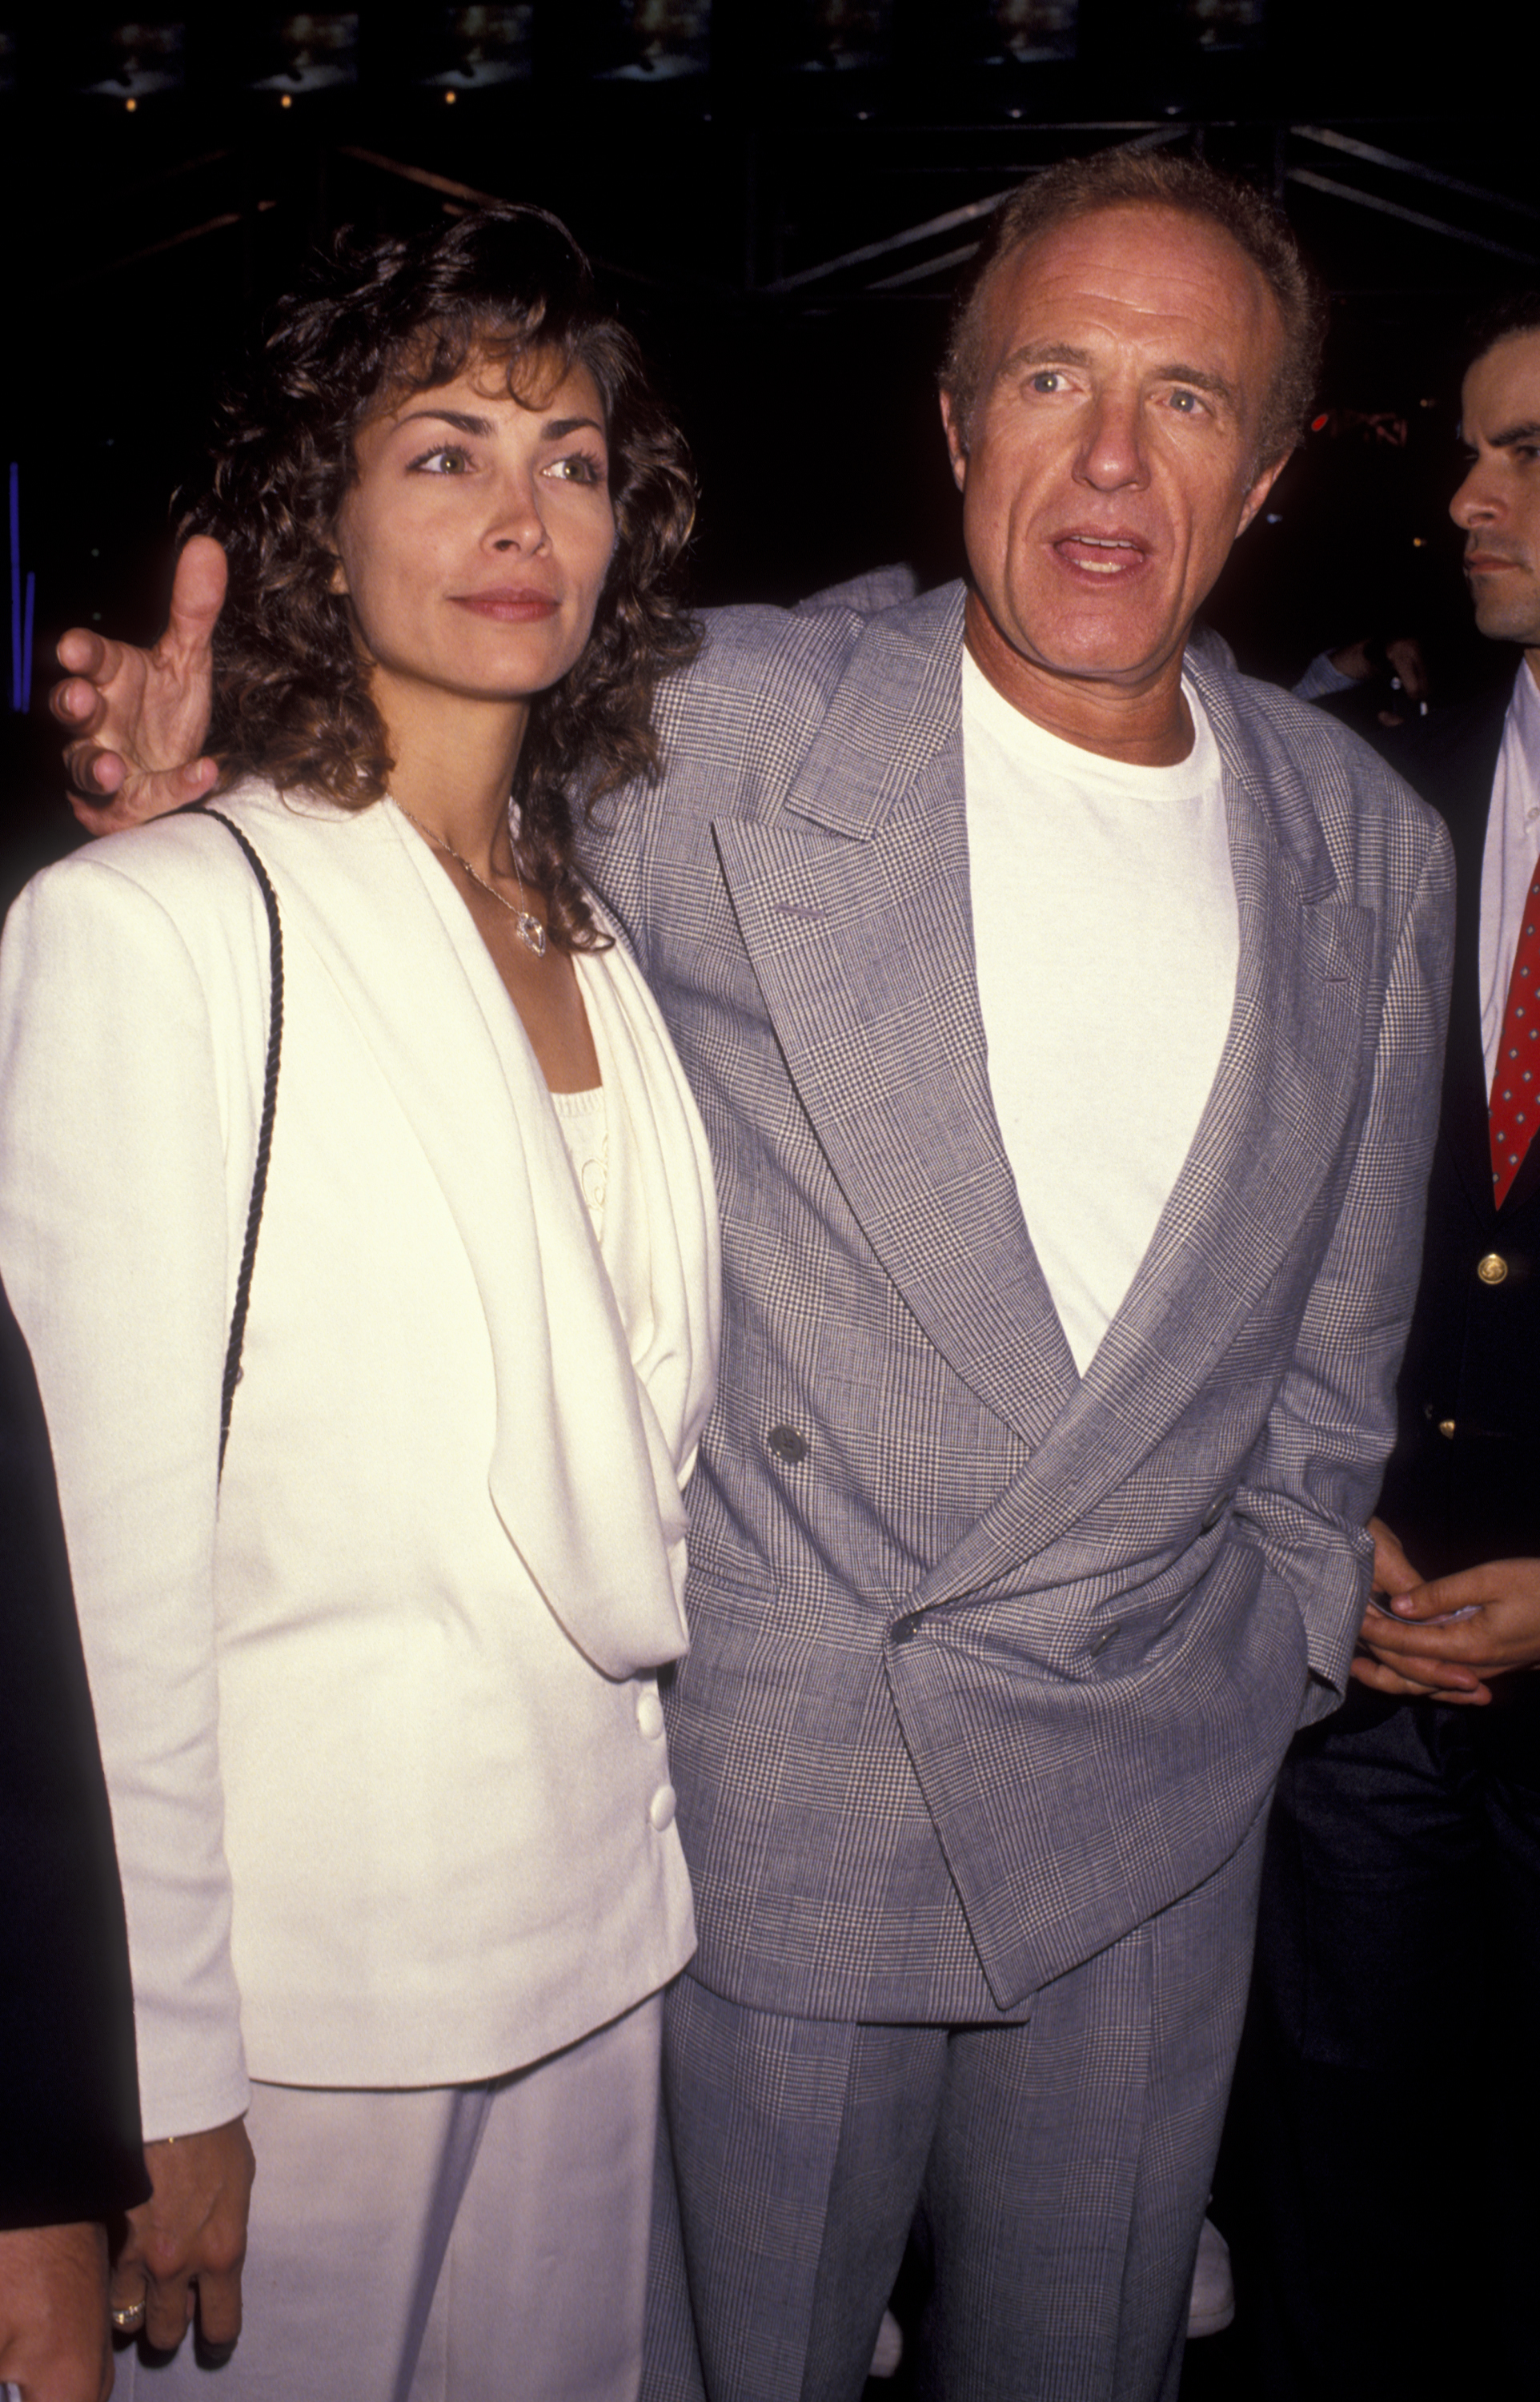 Ingrid Hajek y James Caan en el estreno de "Terminator 2 - Judgement Day" el 1 de junio de 1991, en California | Foto: Getty Images